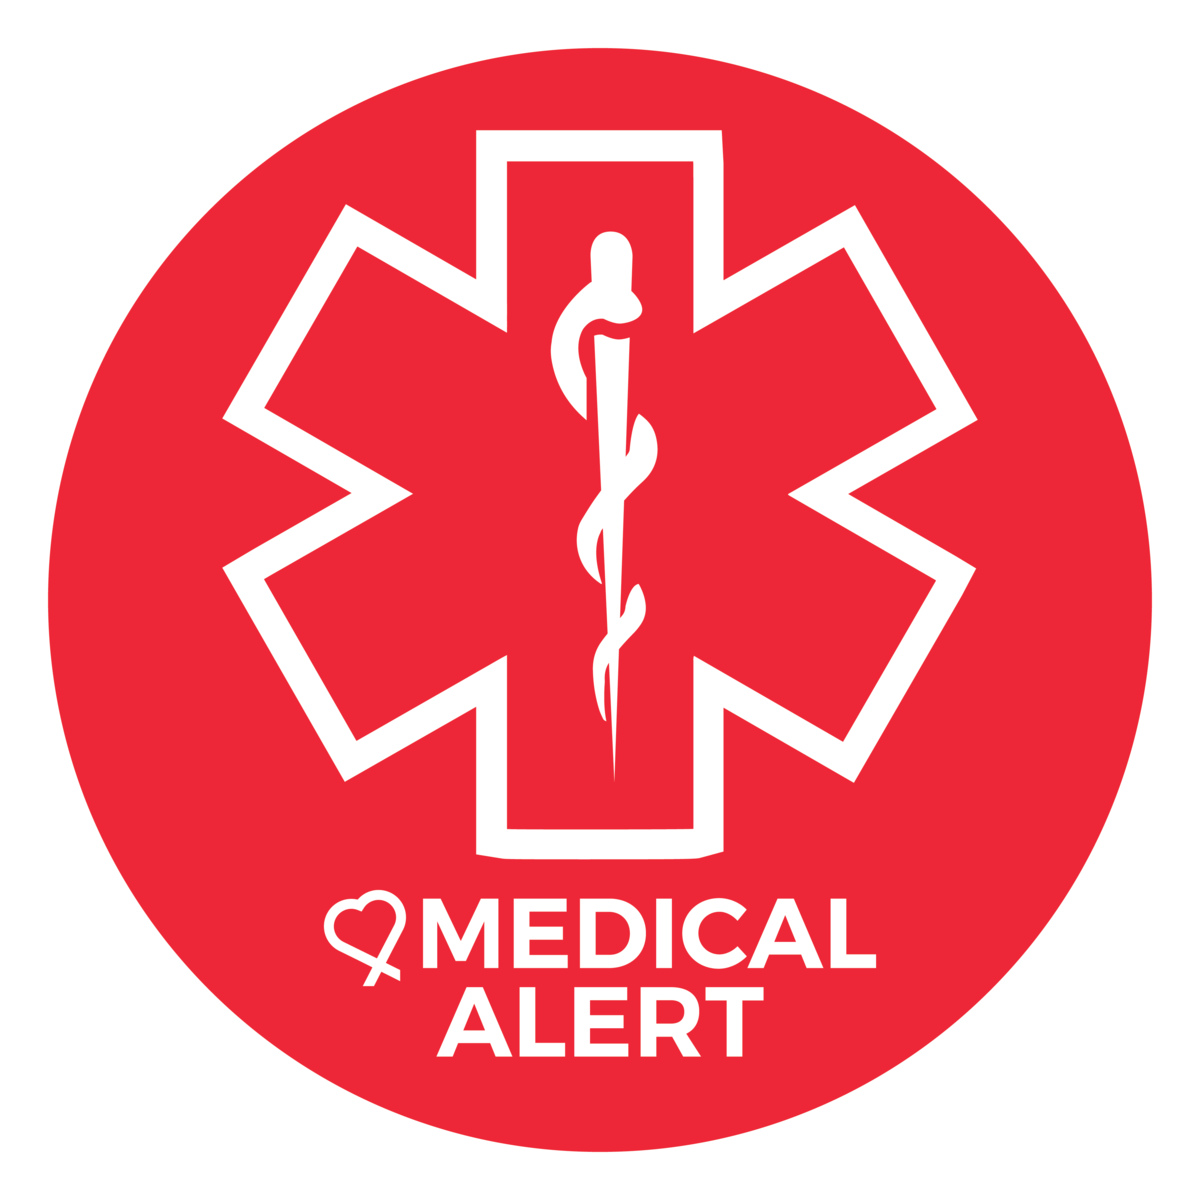 Media alert. Emergency логотип. Medic Alert знак. Service Alert наклейка. Чрезвычайная ситуация лого.